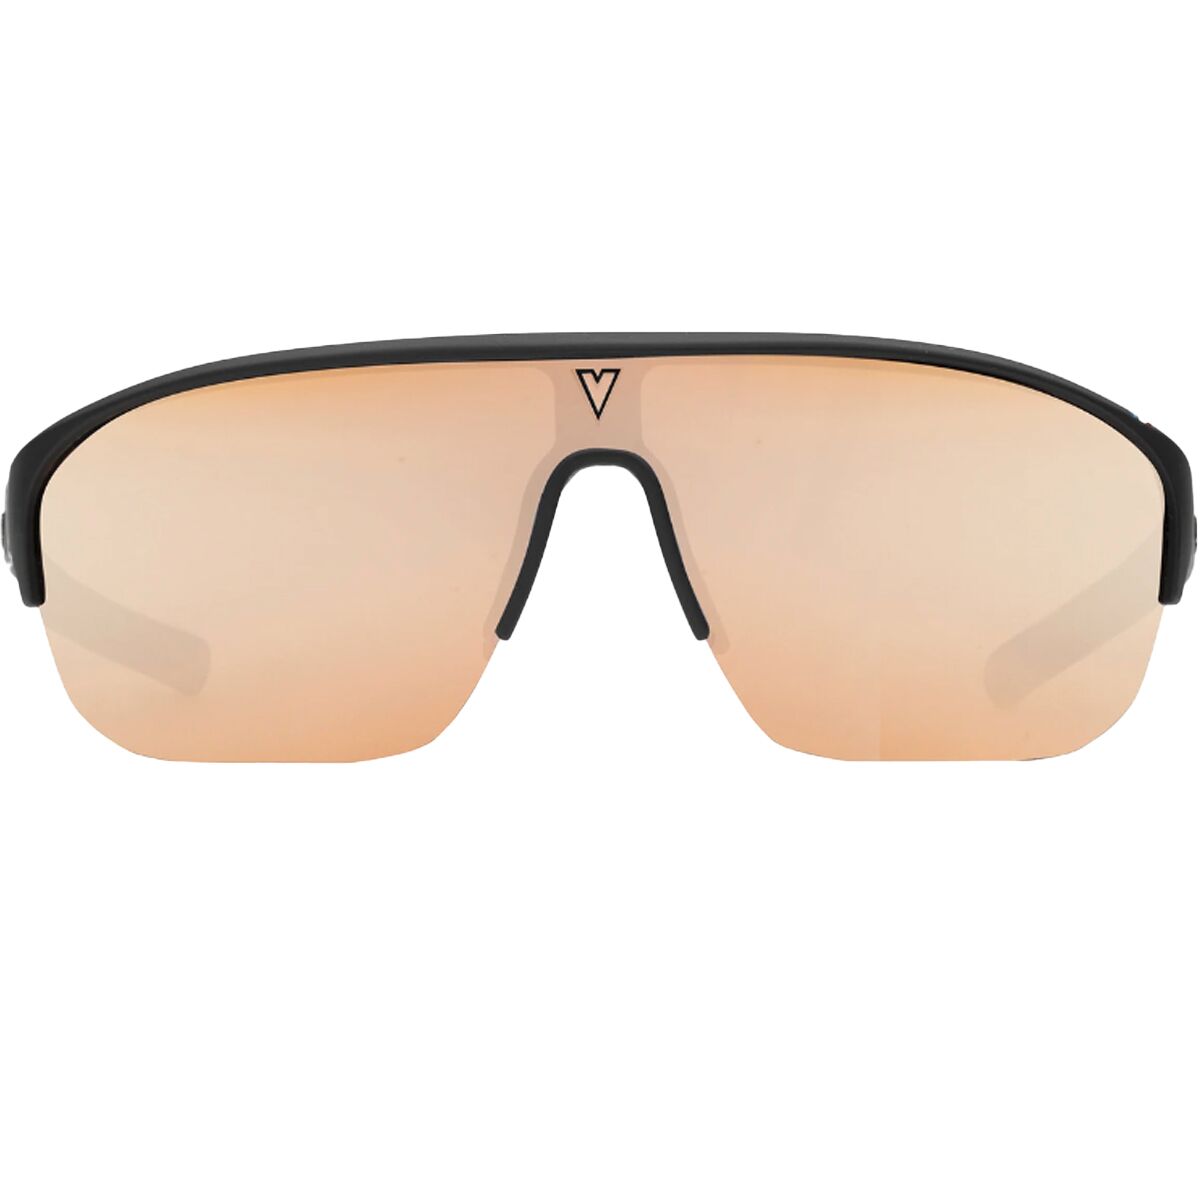 Фотохромные солнцезащитные очки Vuarnet Racing 2006 Vuarnet